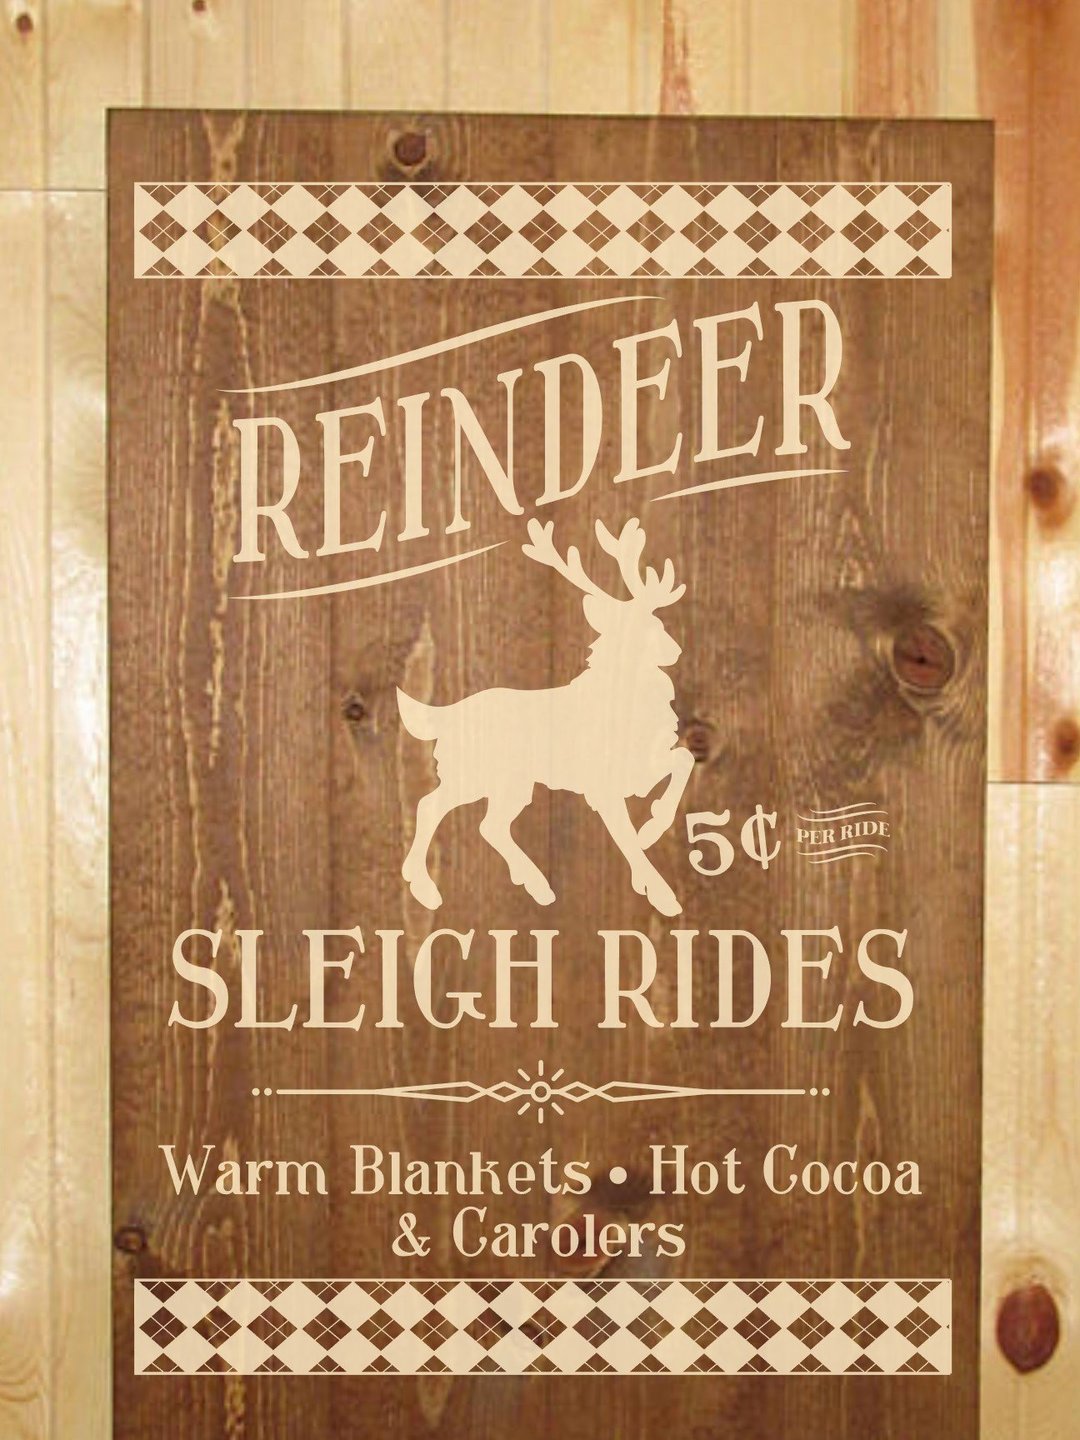 Reindeer Sleigh Rides - NOCO